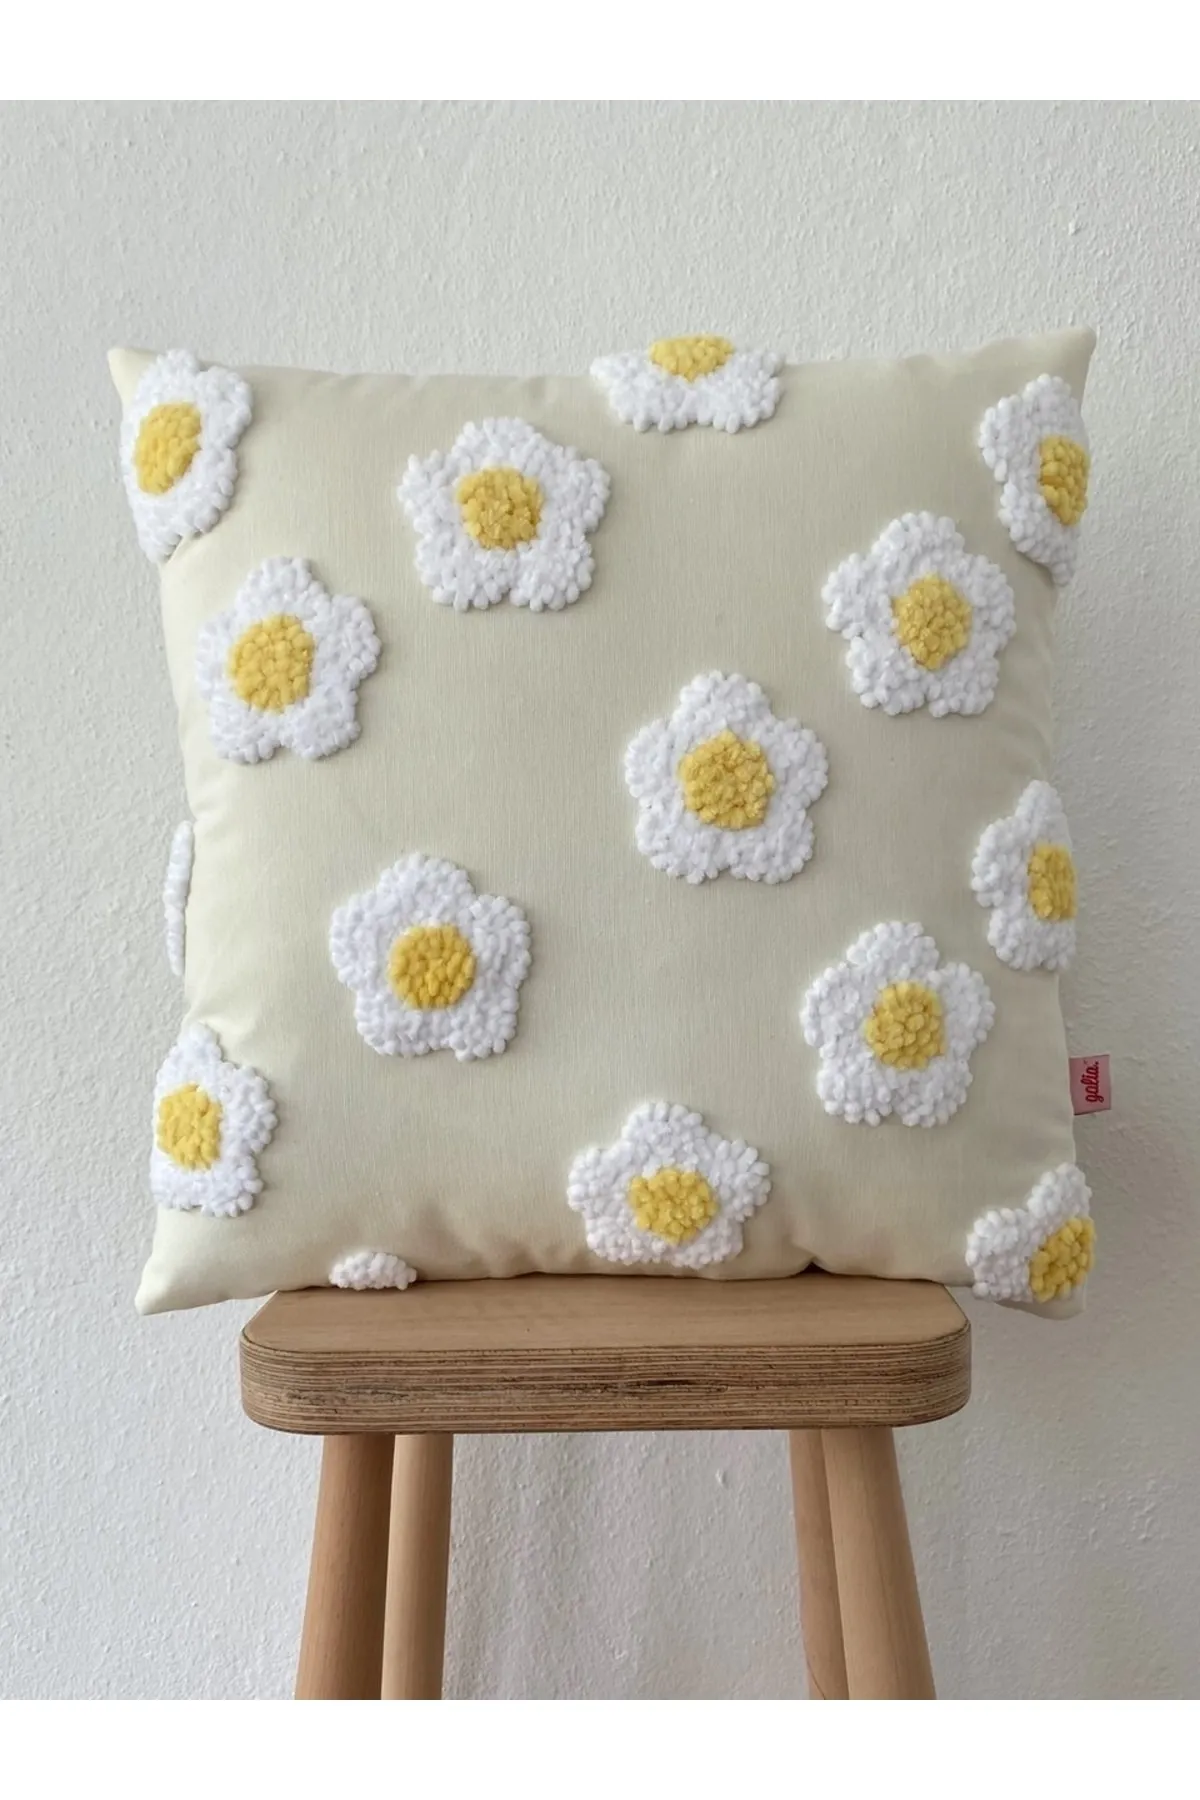 Velvet Daisy Flower Punch Cushion Pillow Cover